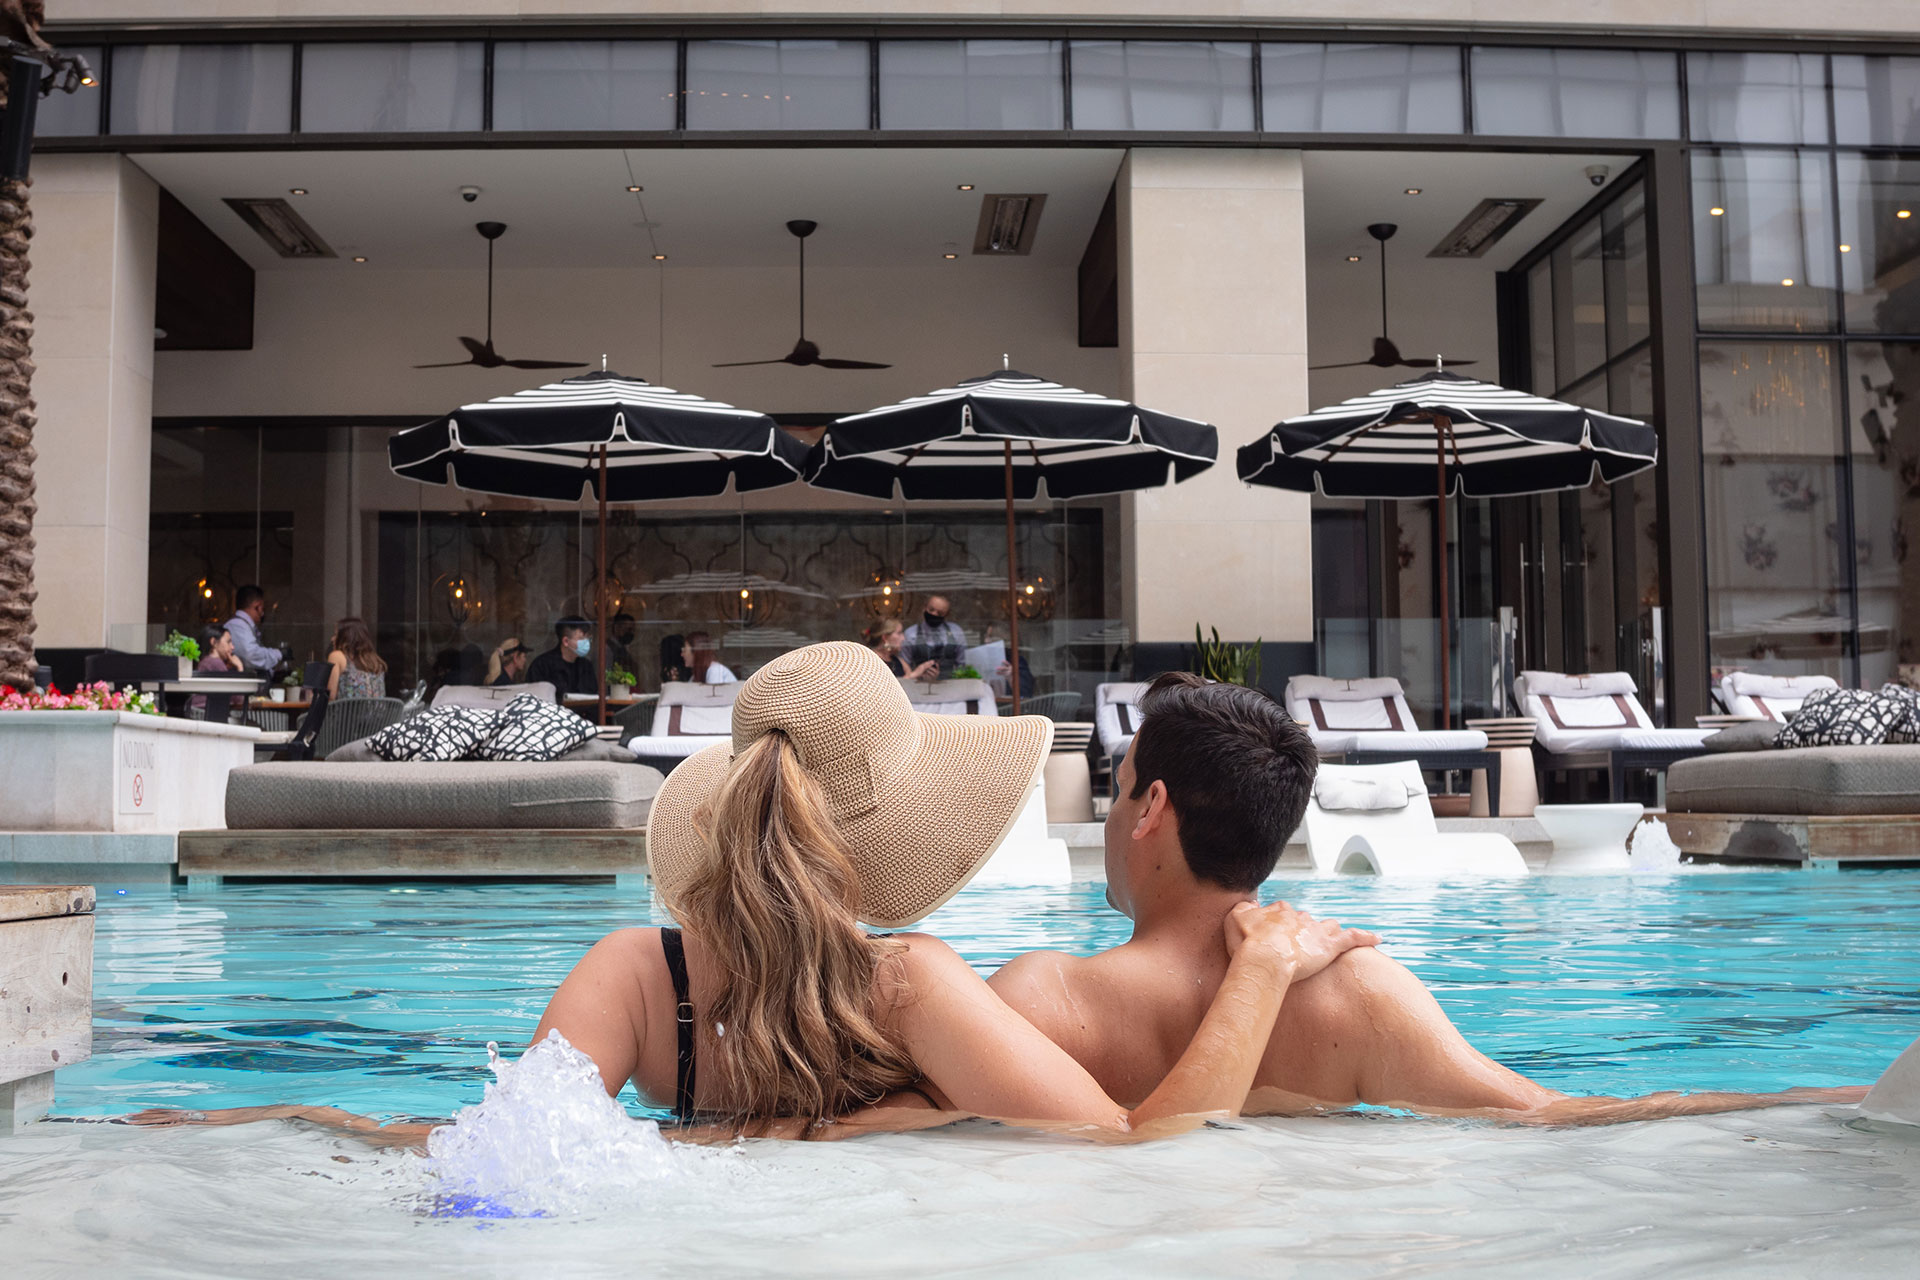 Las Vegas' 11 best hotel pools - ABC News